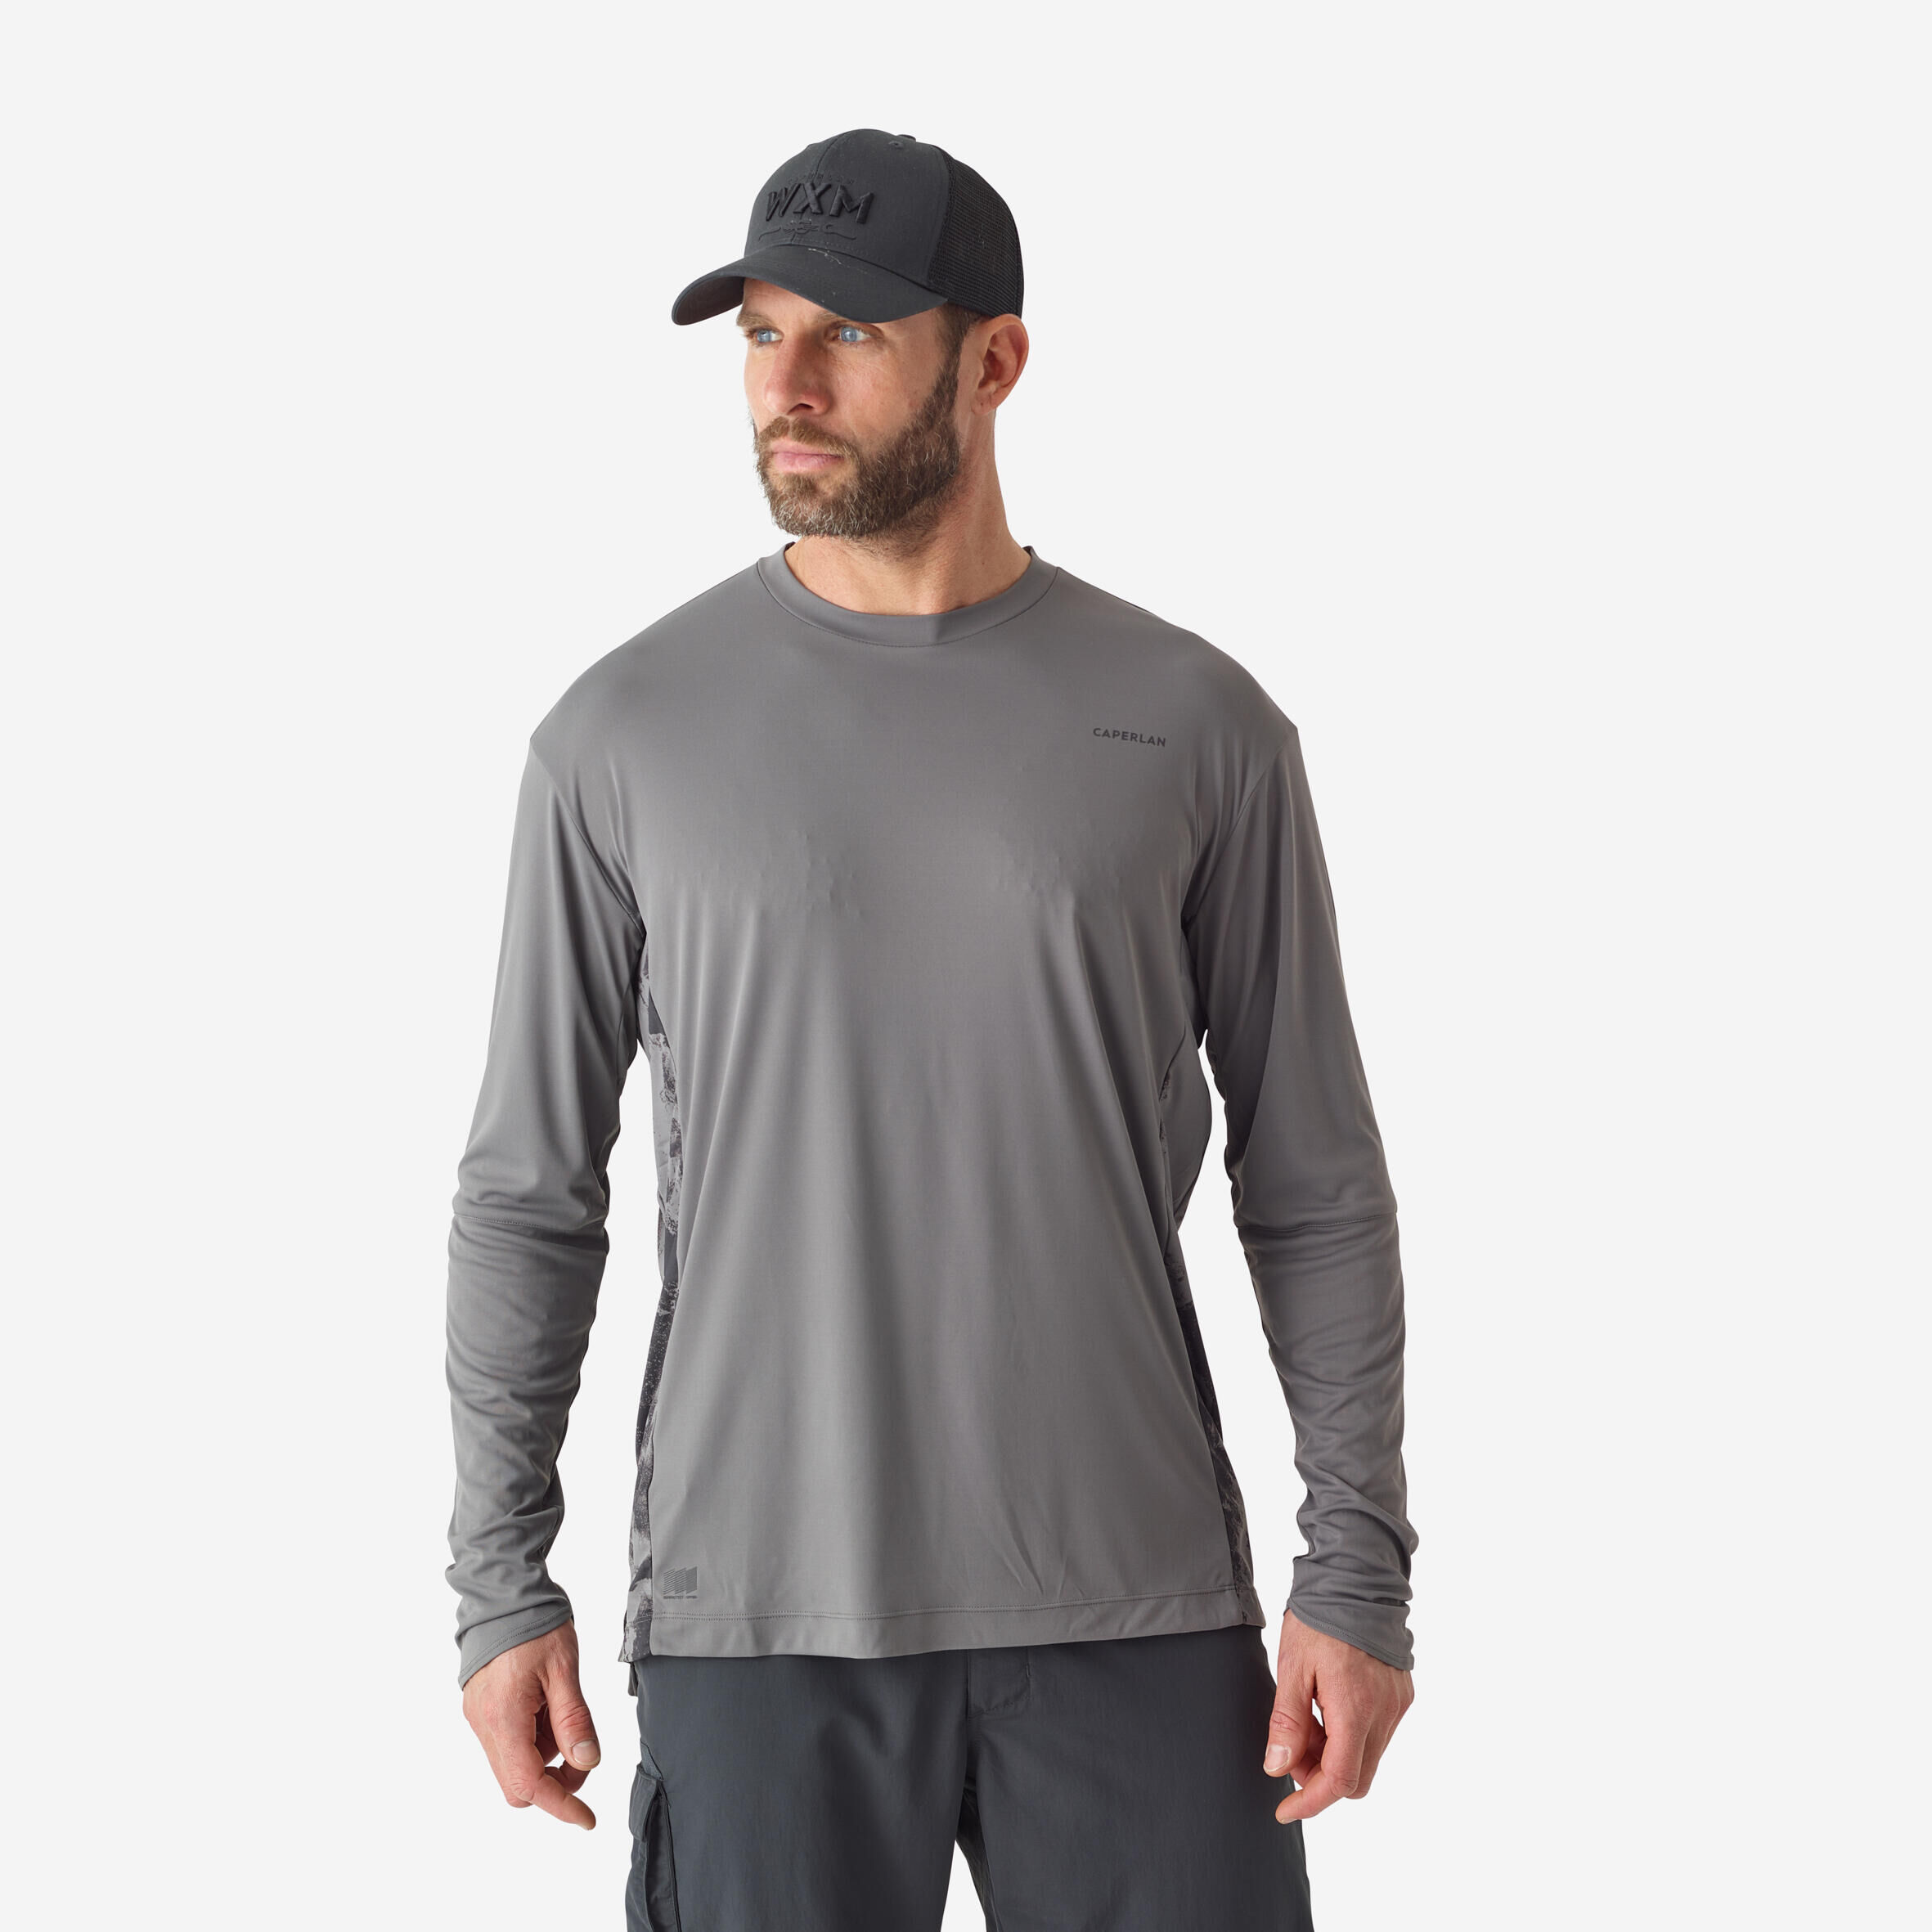 CAPERLAN Fishing anti-UV T-shirt 500 grey